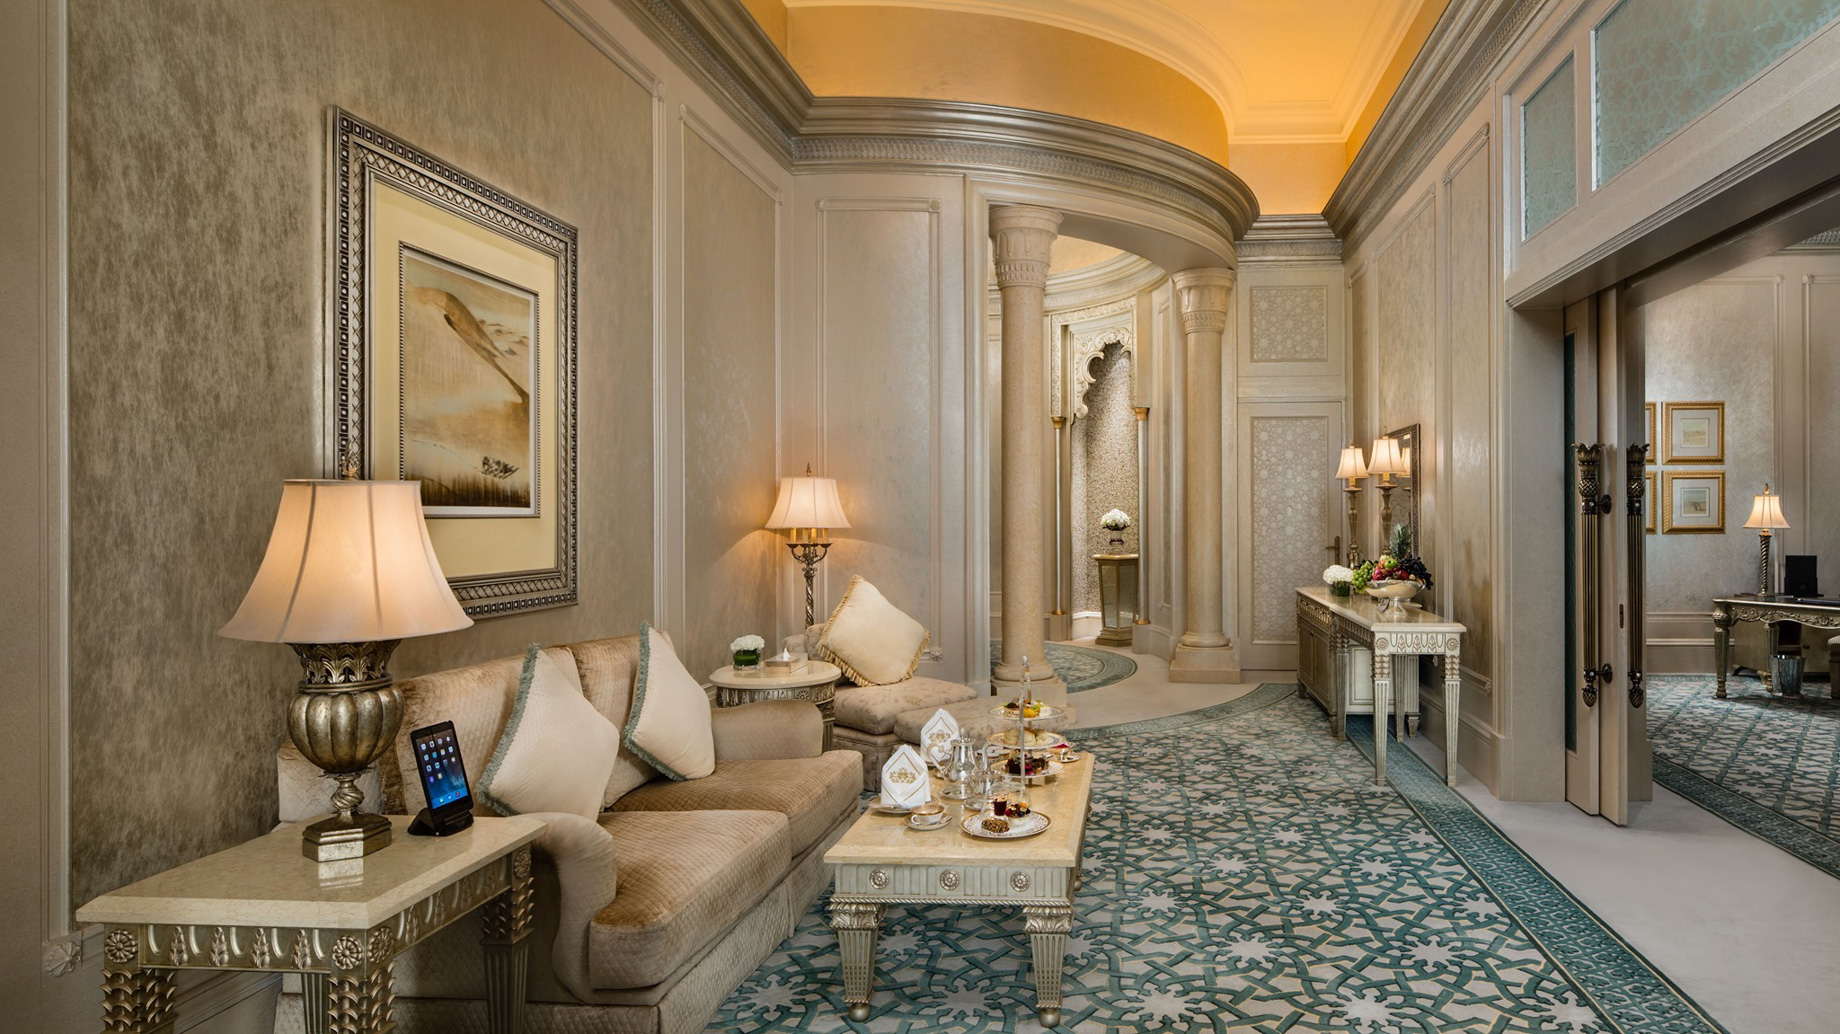 Emirates Palace Abu Dhabi Hotel – Abu Dhabi, UAE – Three Bedroom Palace Suite Lounge